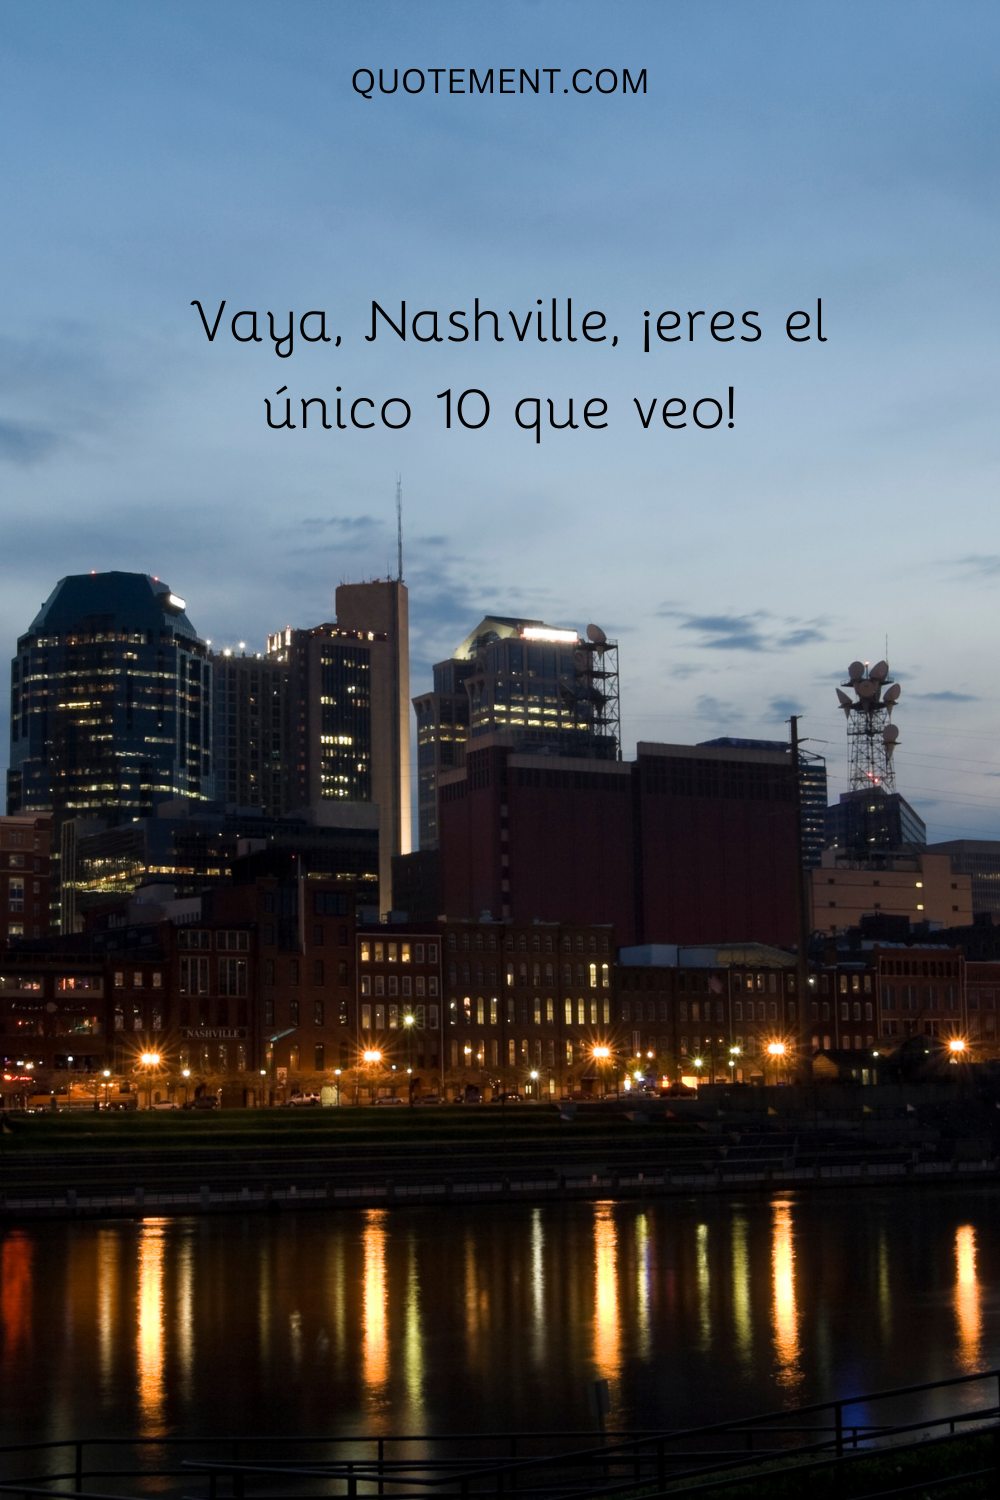 ¡Vaya, Nashville, eres el único diez que veo!